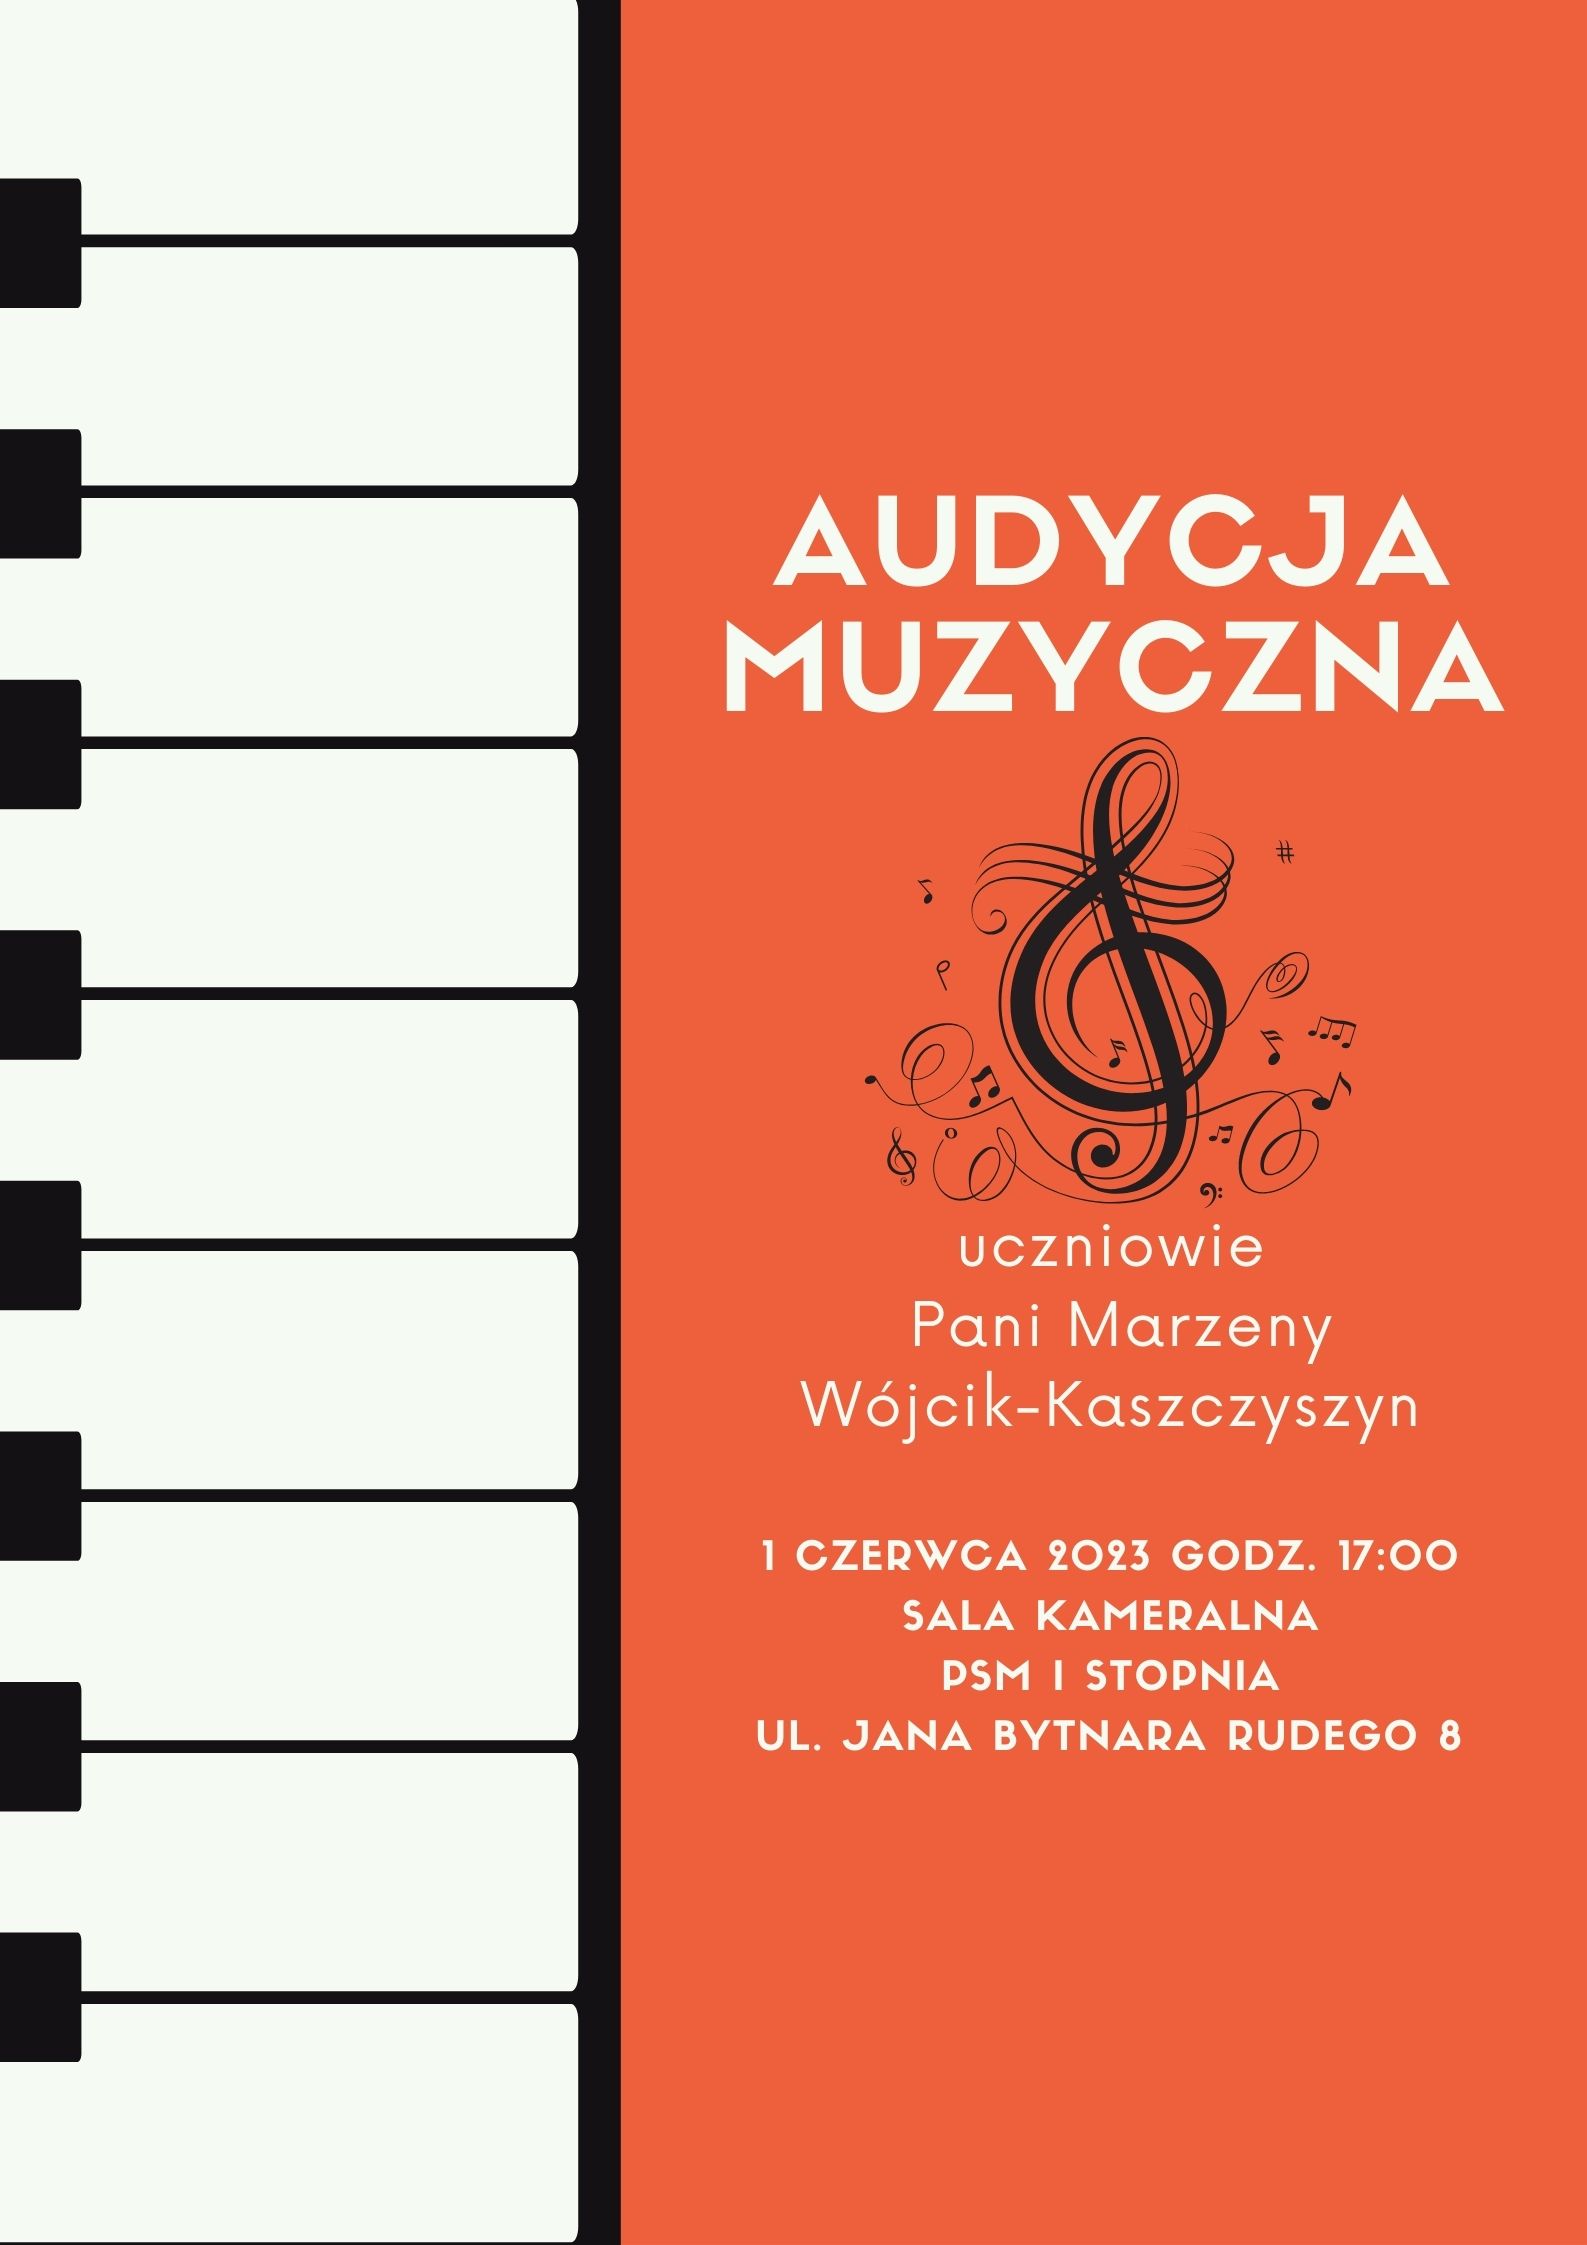 Audycja muzyczna uczniowie p. Marzeny Wójcik-Kaszczyszyn